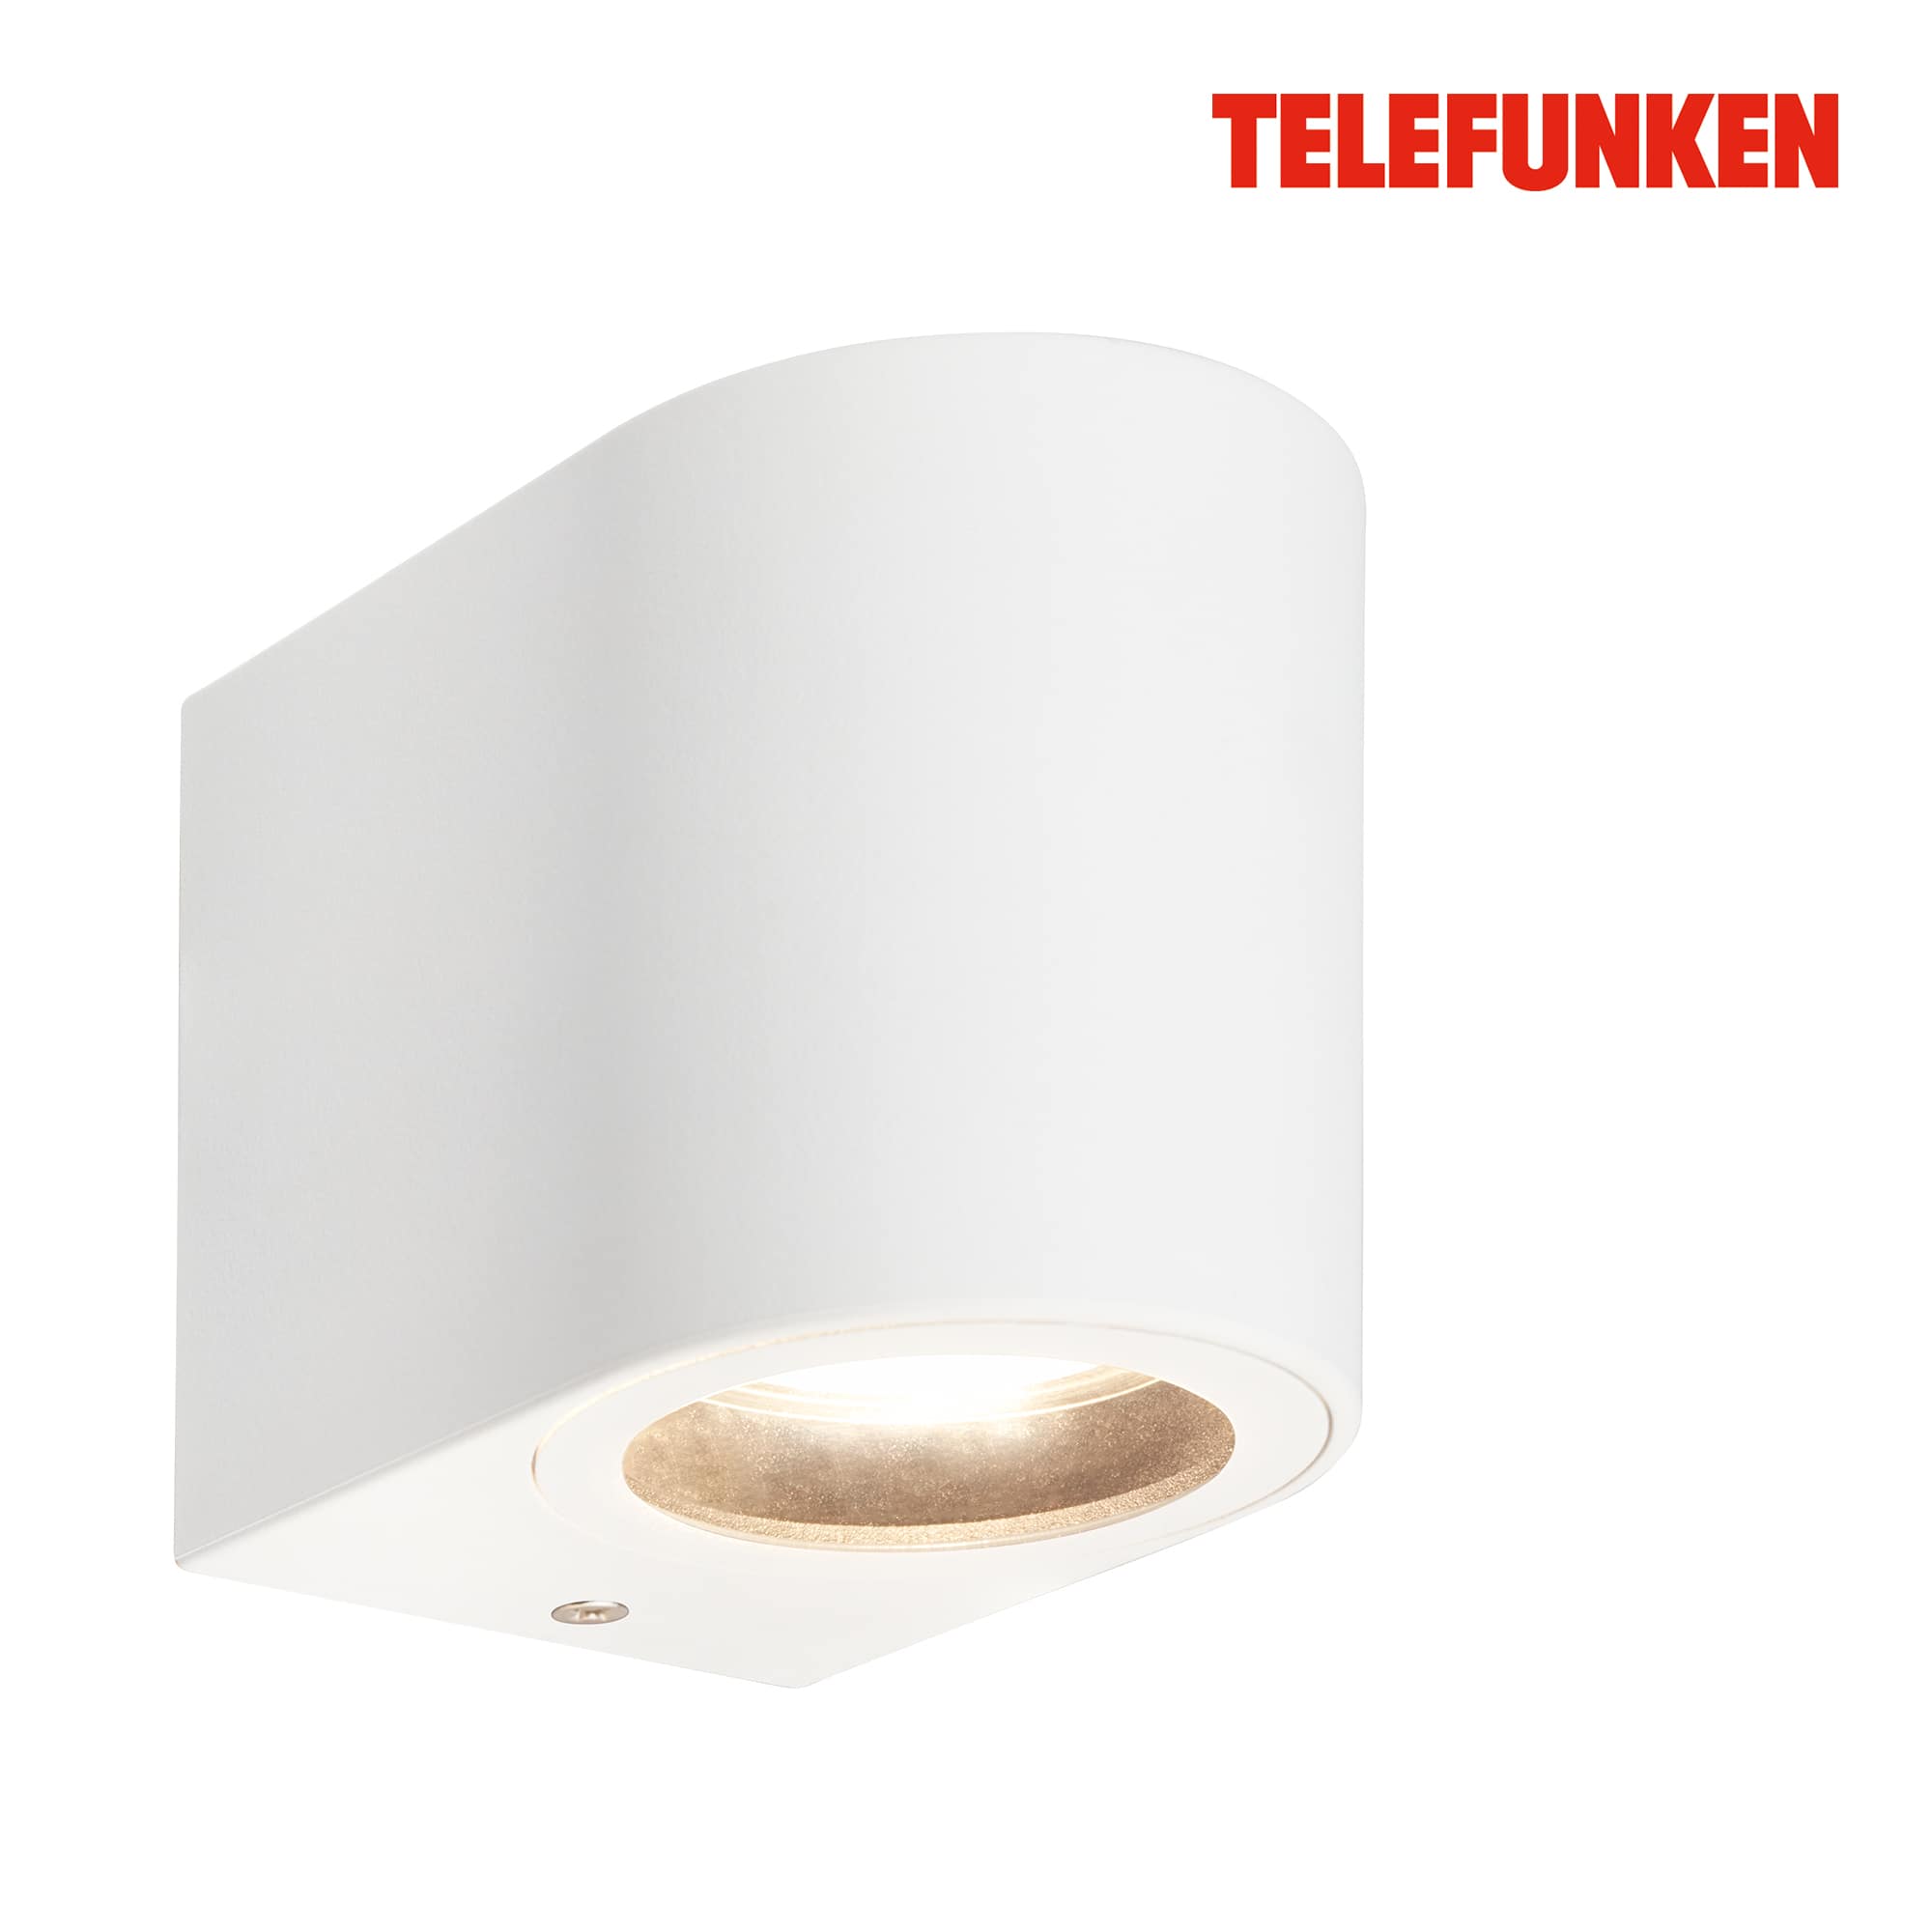 Telefunken LED Wandlampe, Spritzwasserschutz, On/Off via Wandschalter